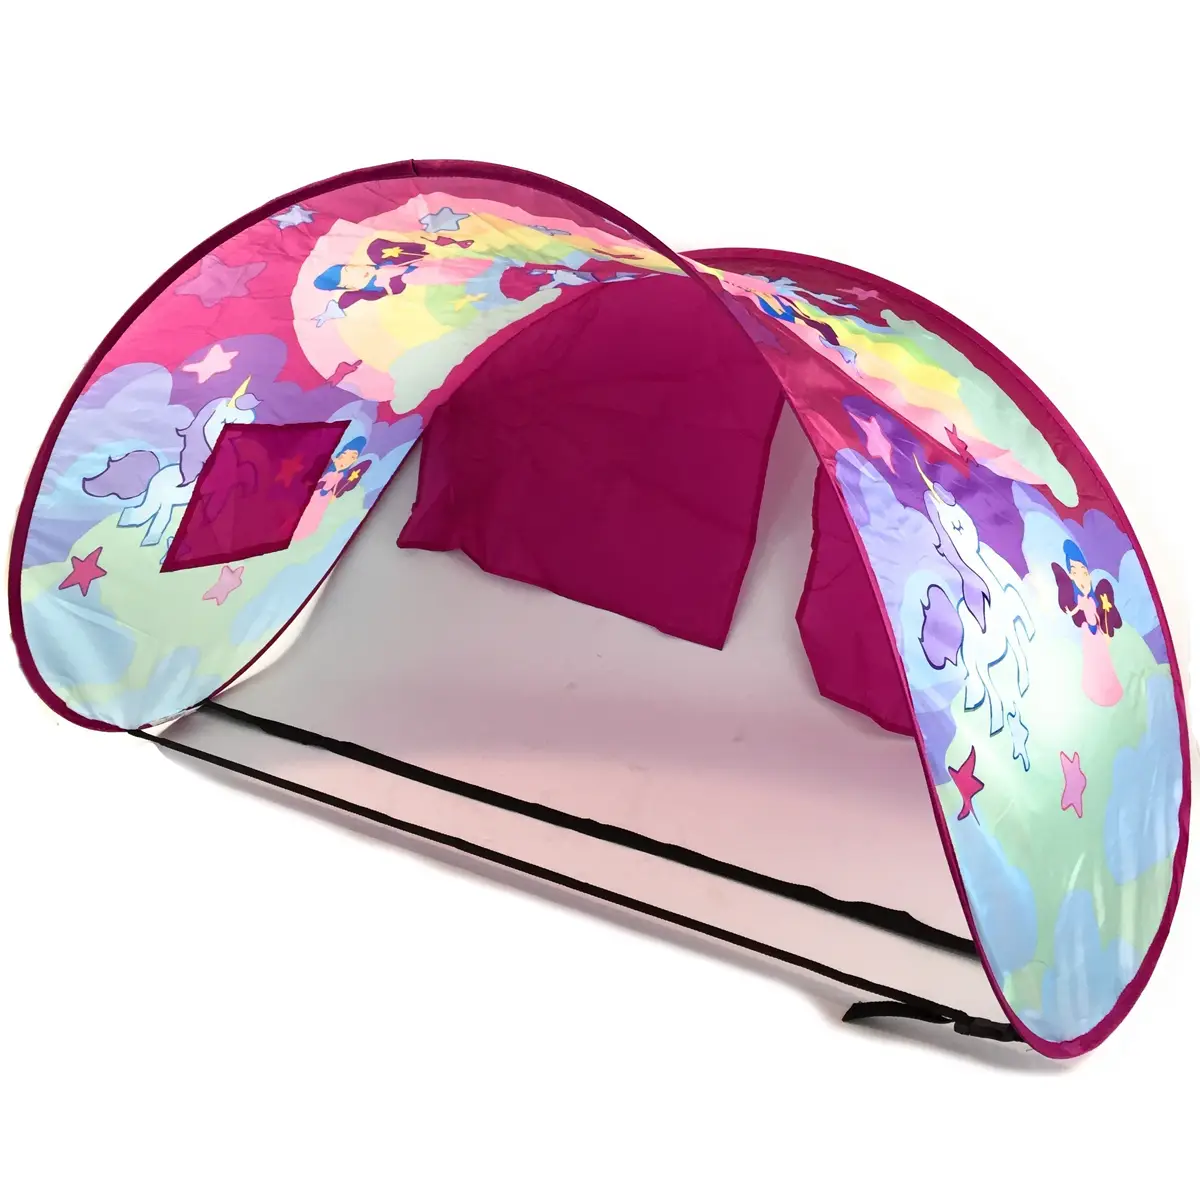 Sleepfun Tent庐 - Fairy Betthimmel Dream